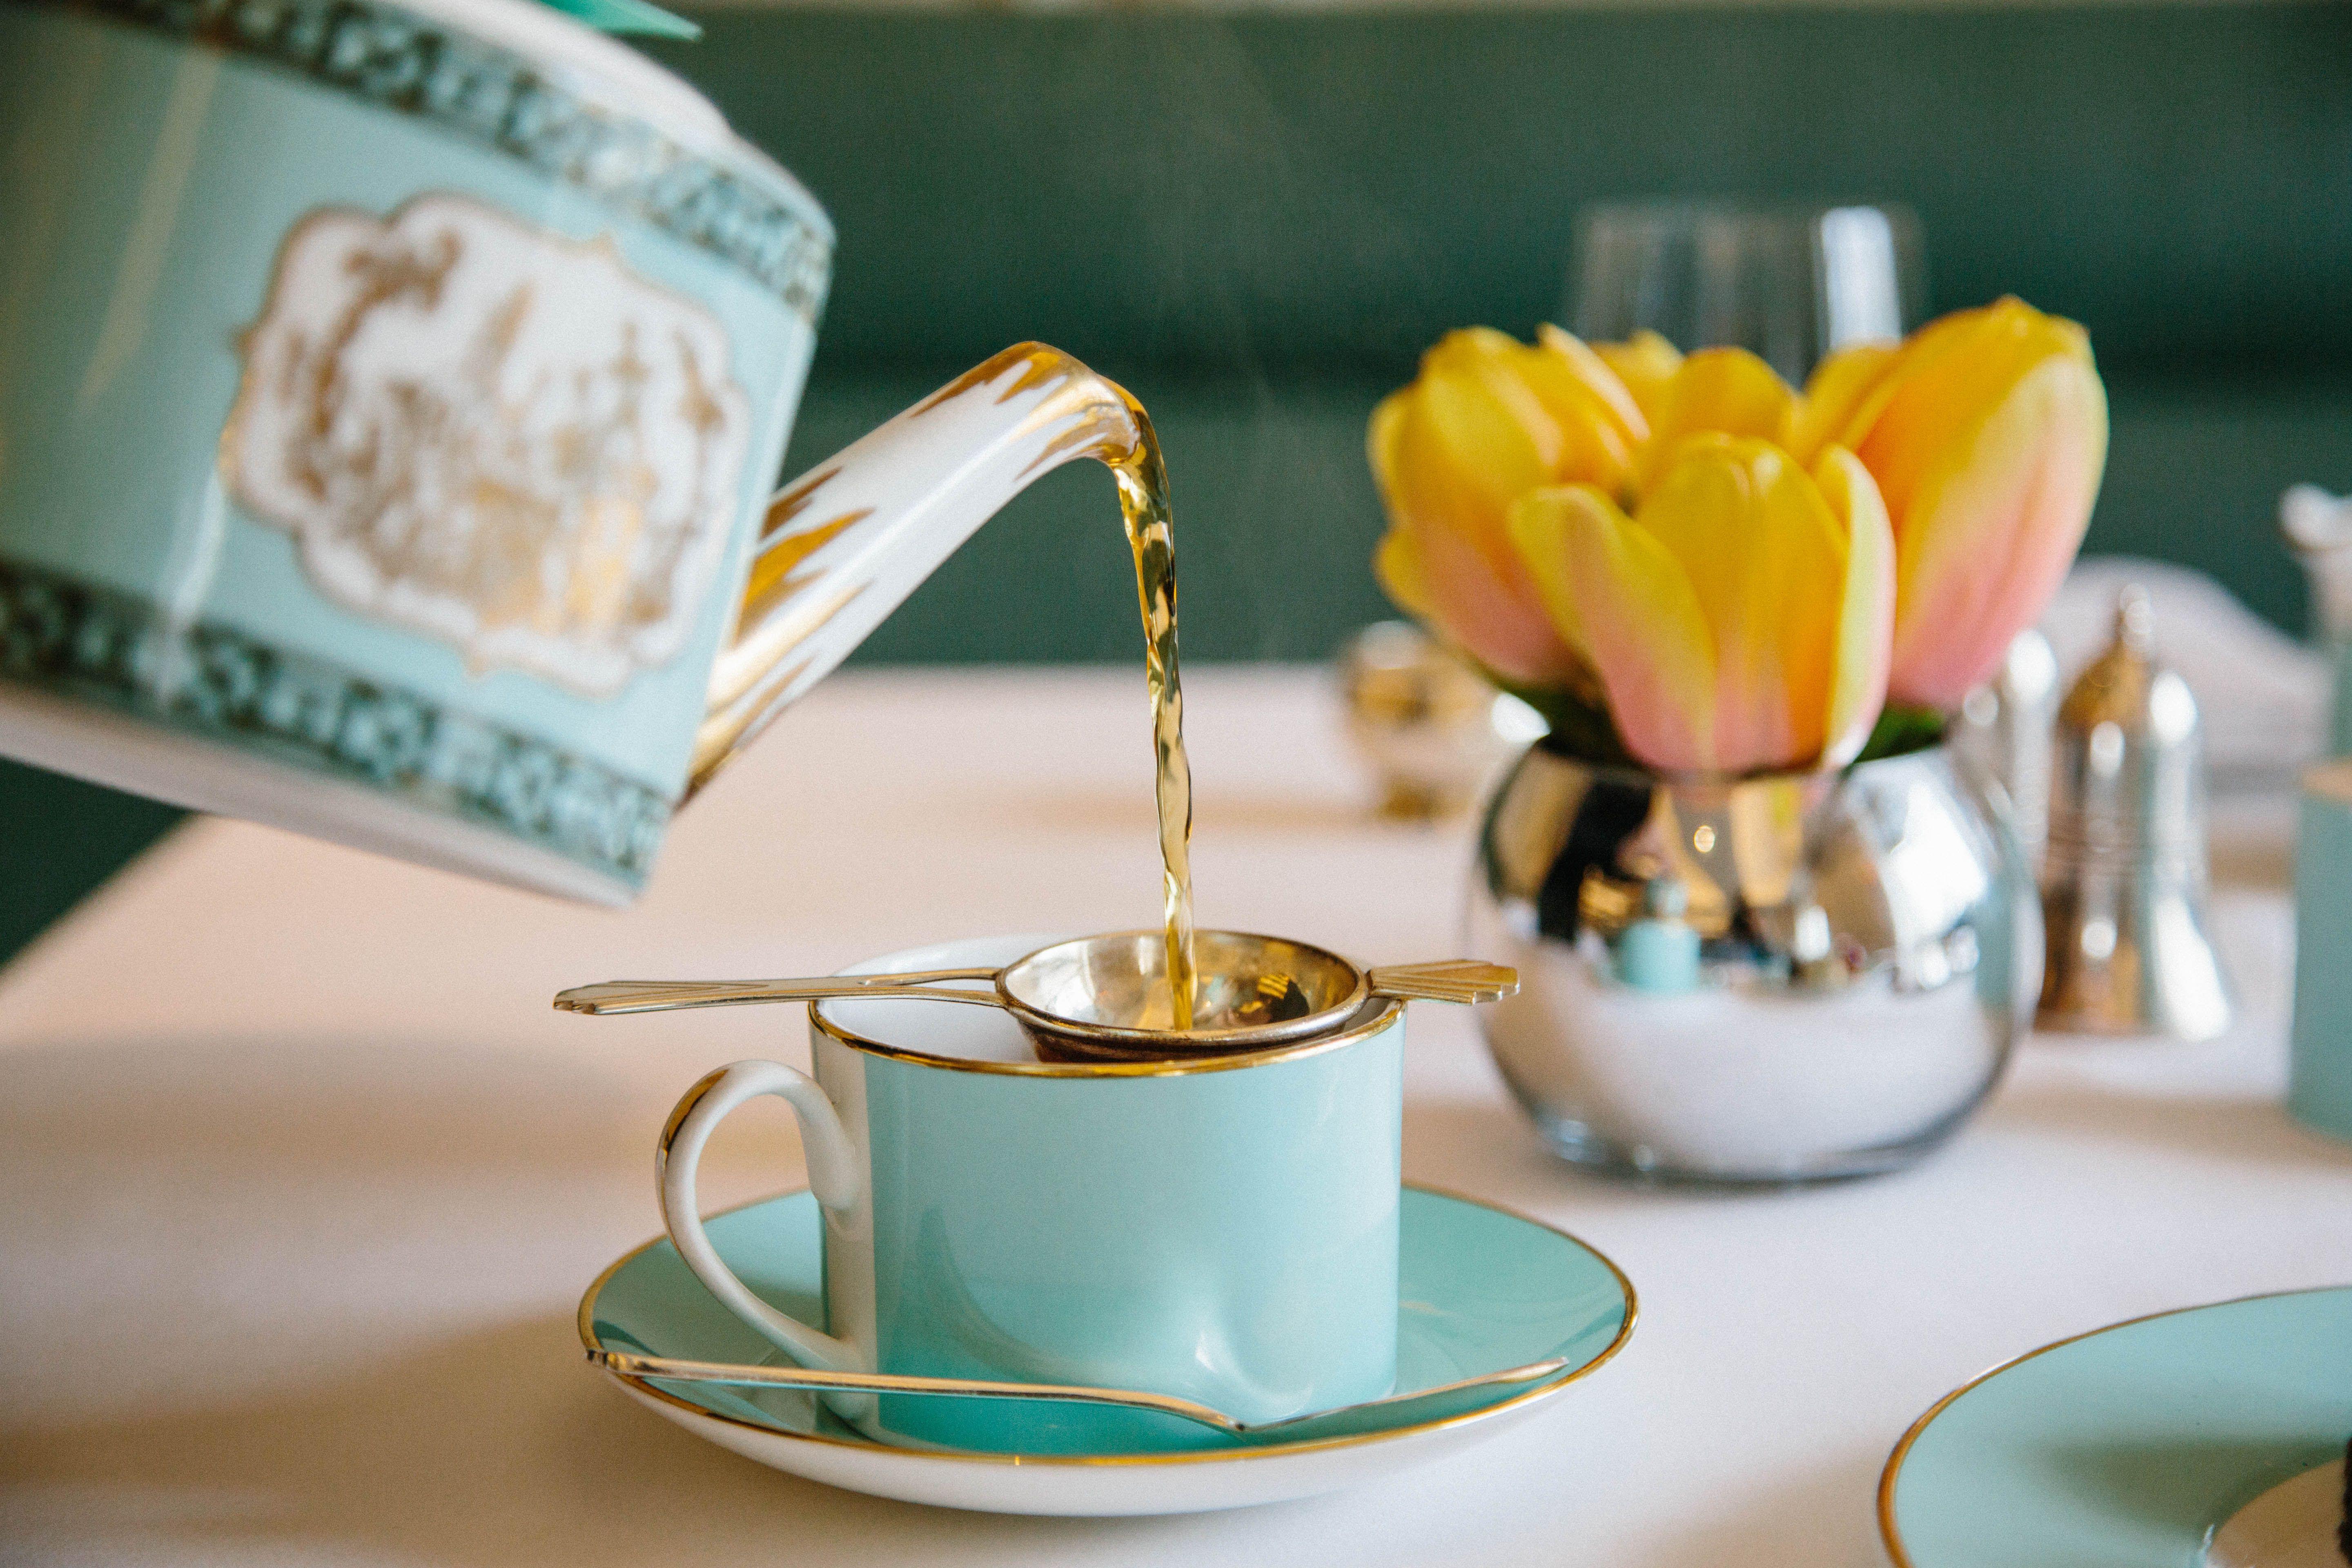 AfternoonTea #Tea #TeaTime #Treat #Tradition #British